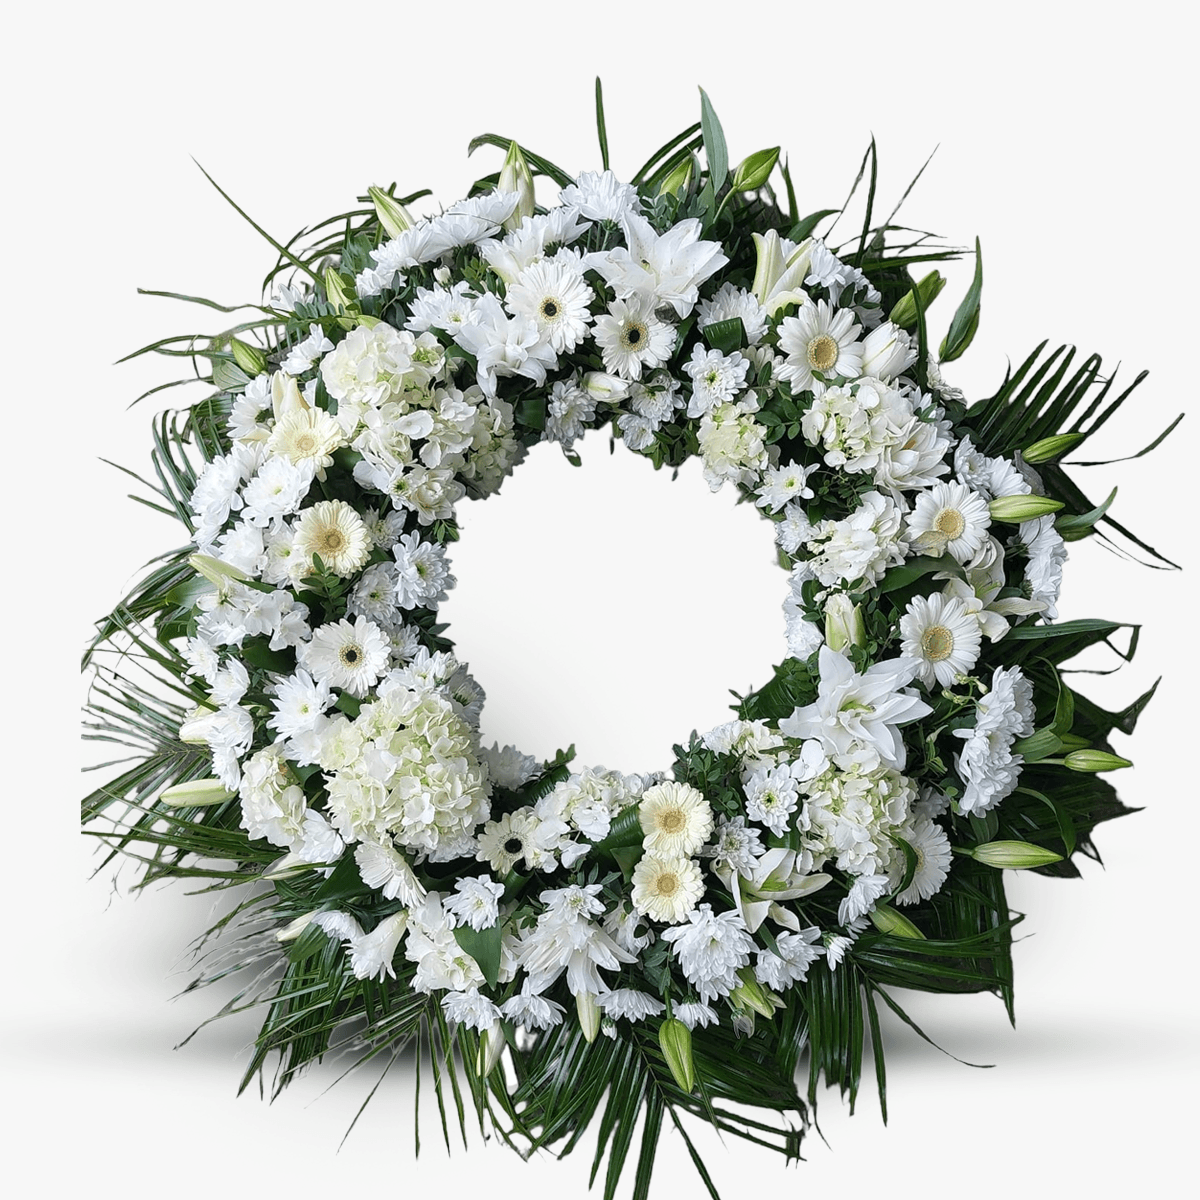 Coroana funerara cu hortensia alba, gerbera alba, crin si verdeata